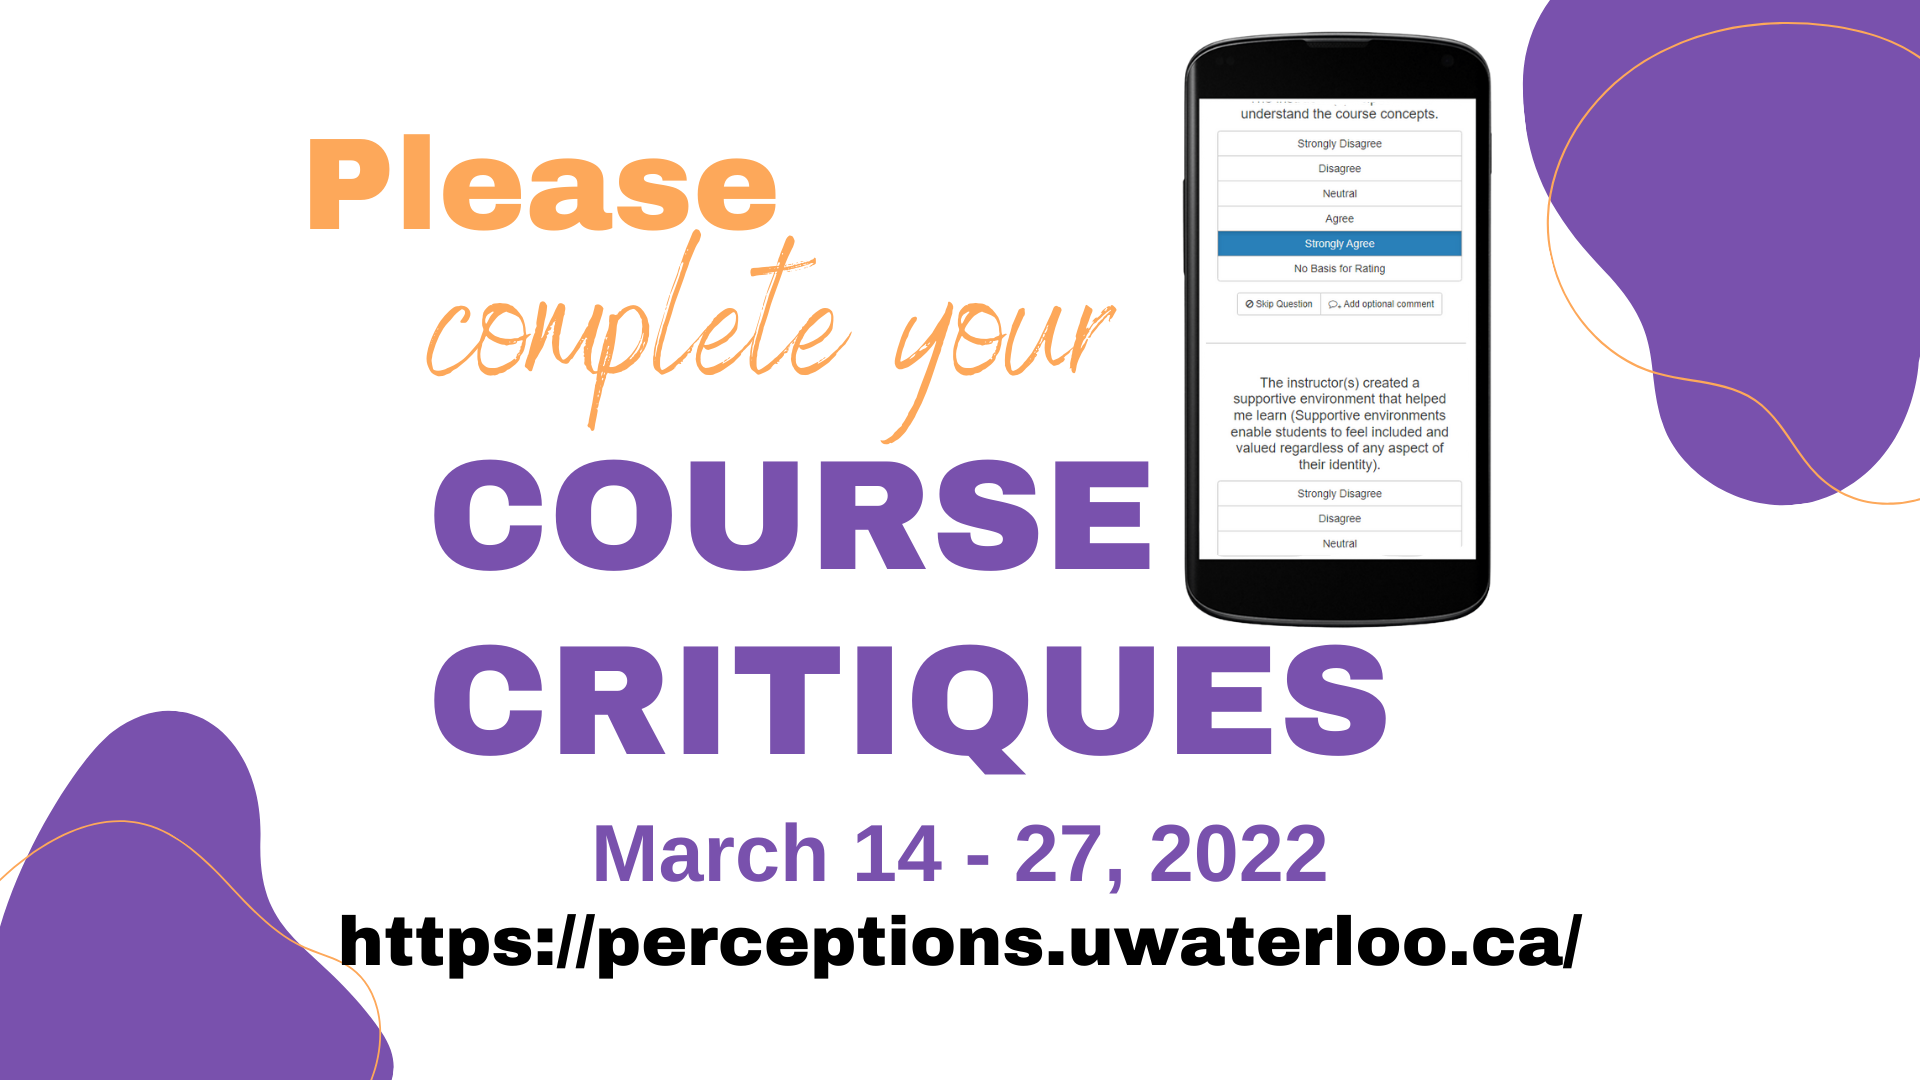 course critiques due march 27